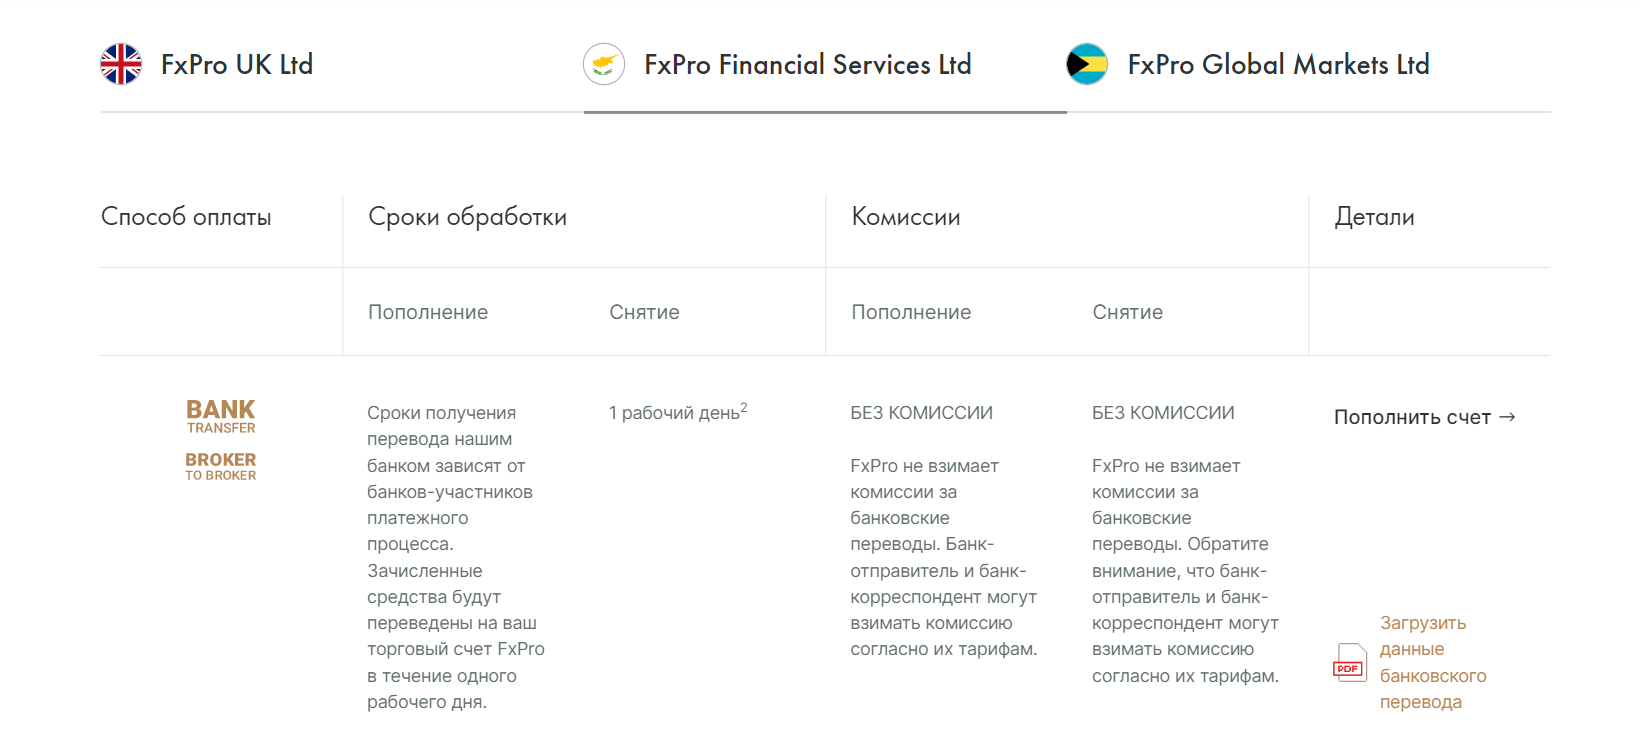 Как внести депозит или сделать вывод в FxPro